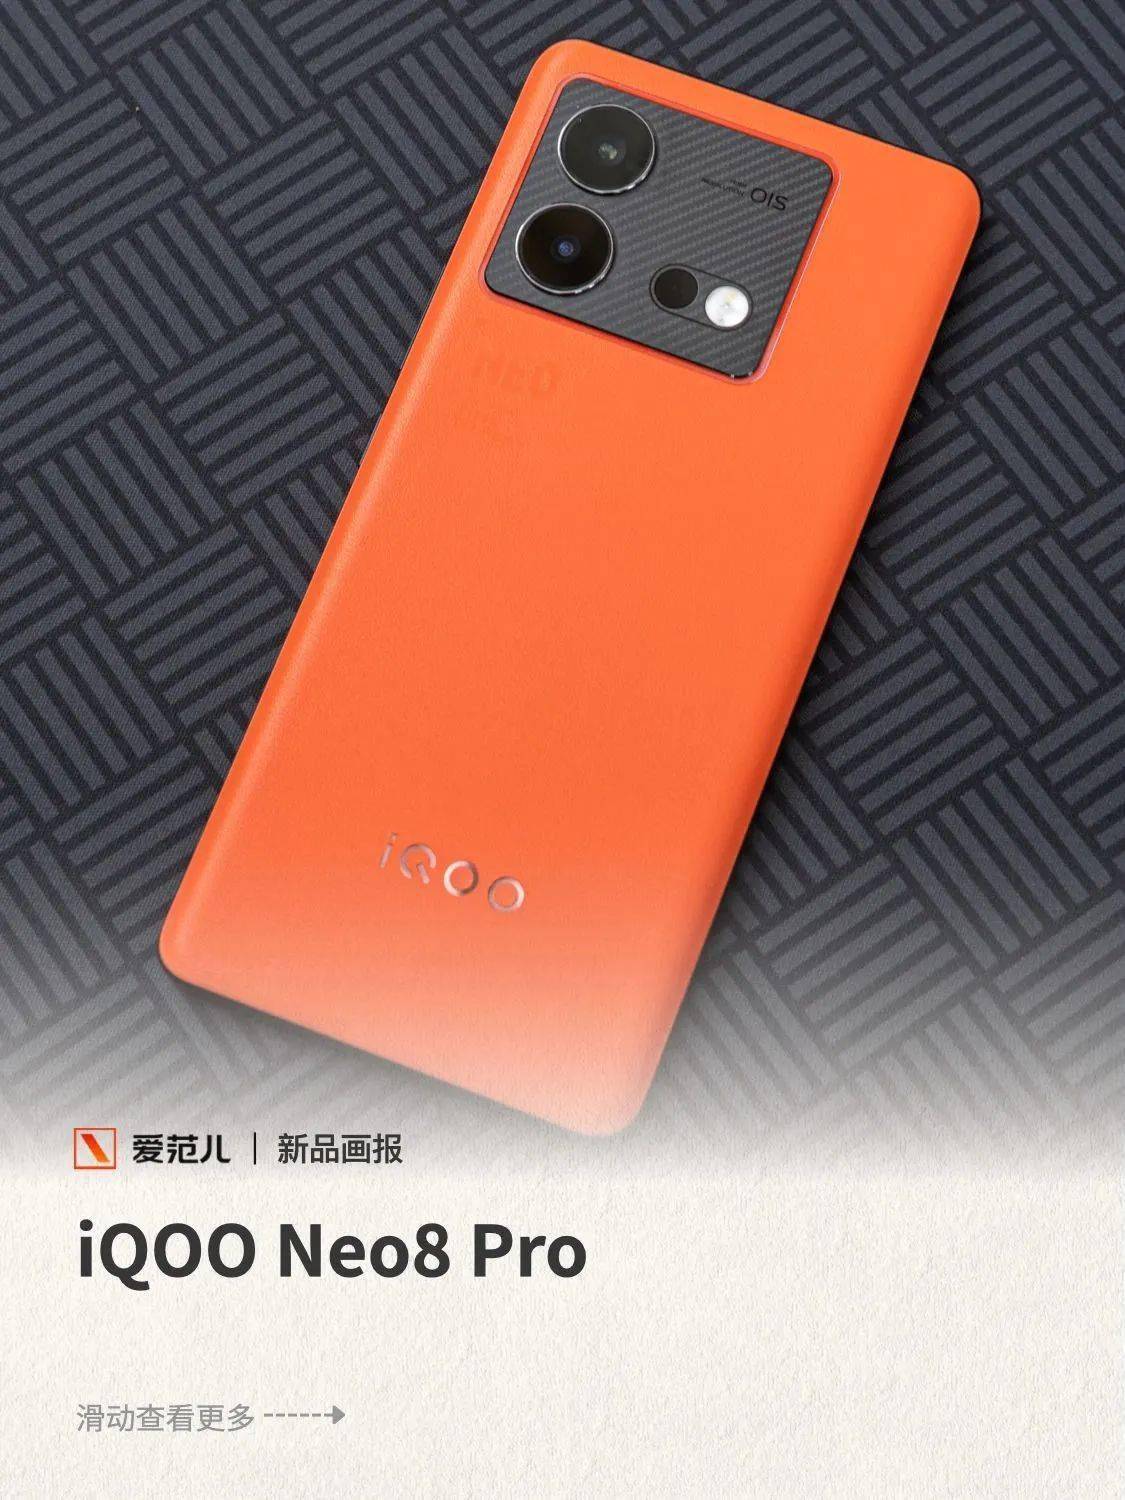 iqoo neo8 pro 赛点版图赏:终于有了 pro 款,和标准版又有多大差别?